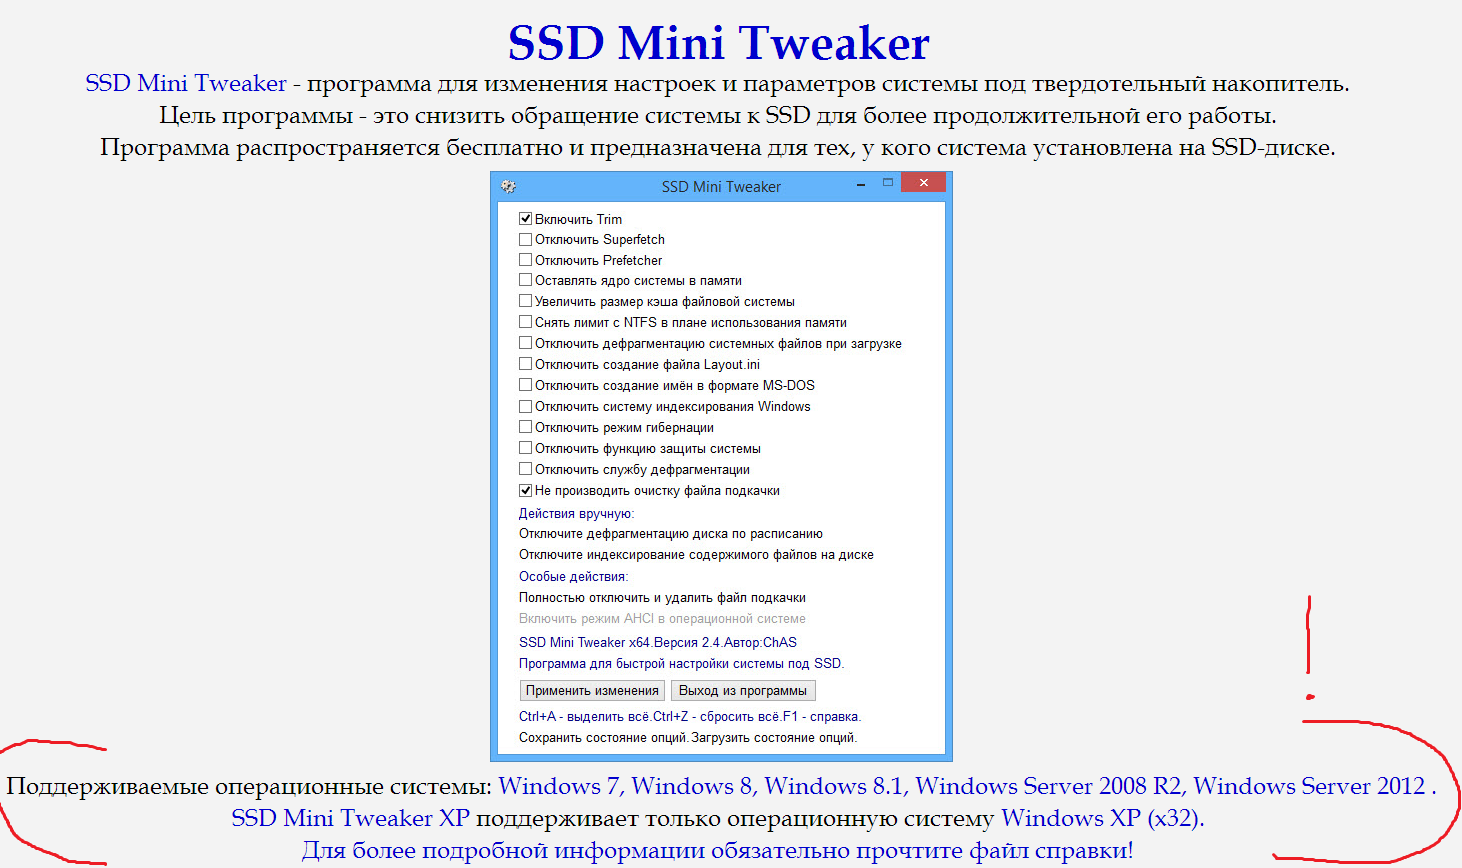 Ssd mini tweaker для windows 10: что это, как правильно настроить